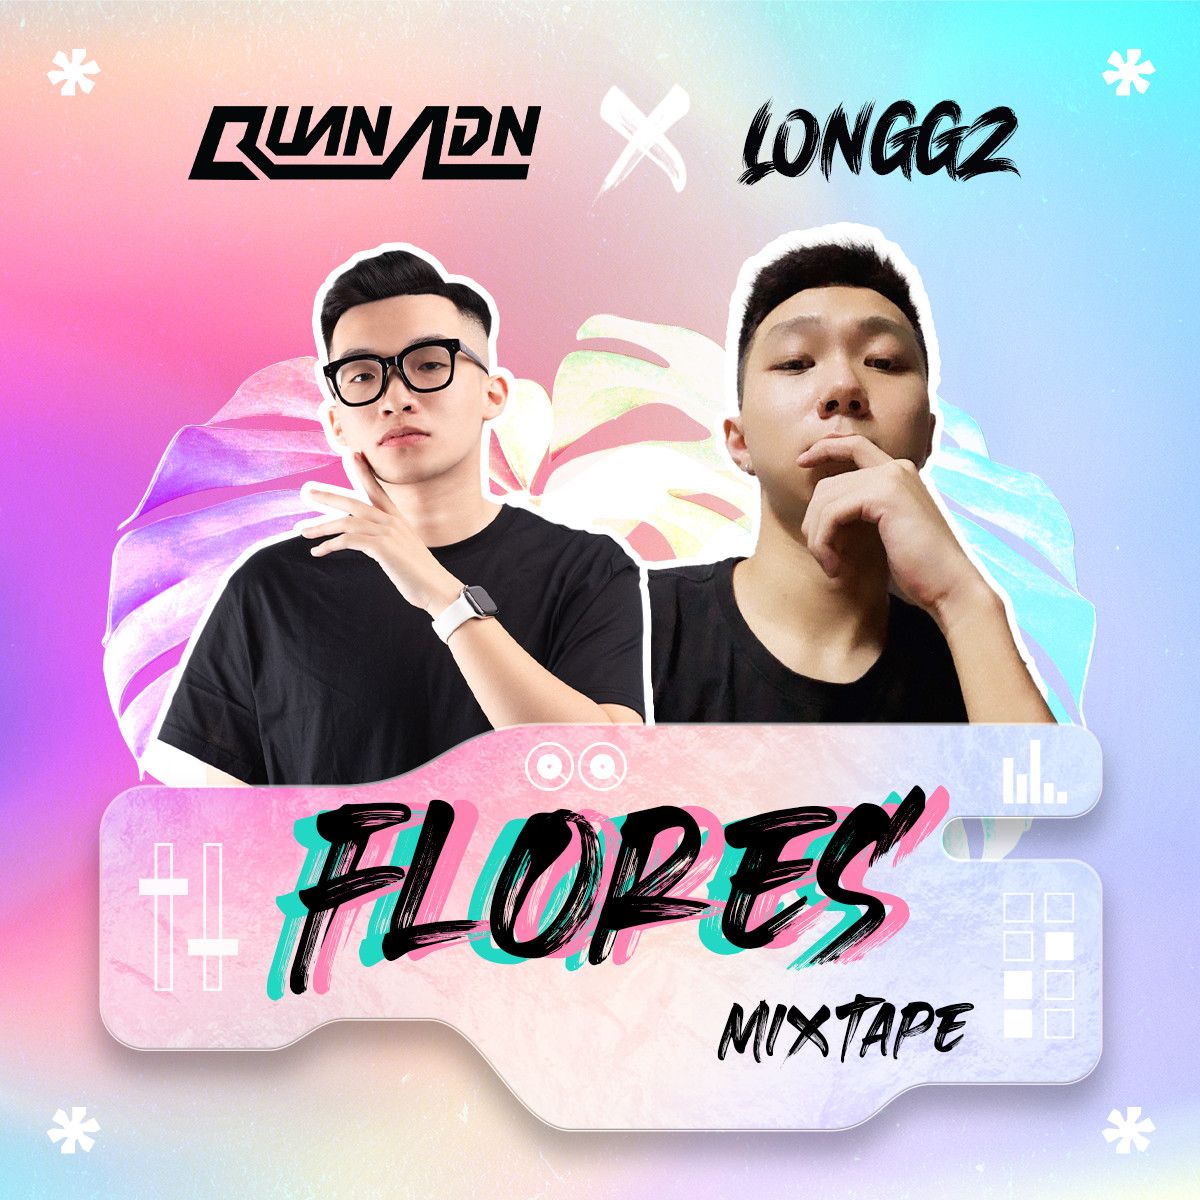 ডাউনলোড করুন Mixtape - Flores by Quan ADN & LONGGZ